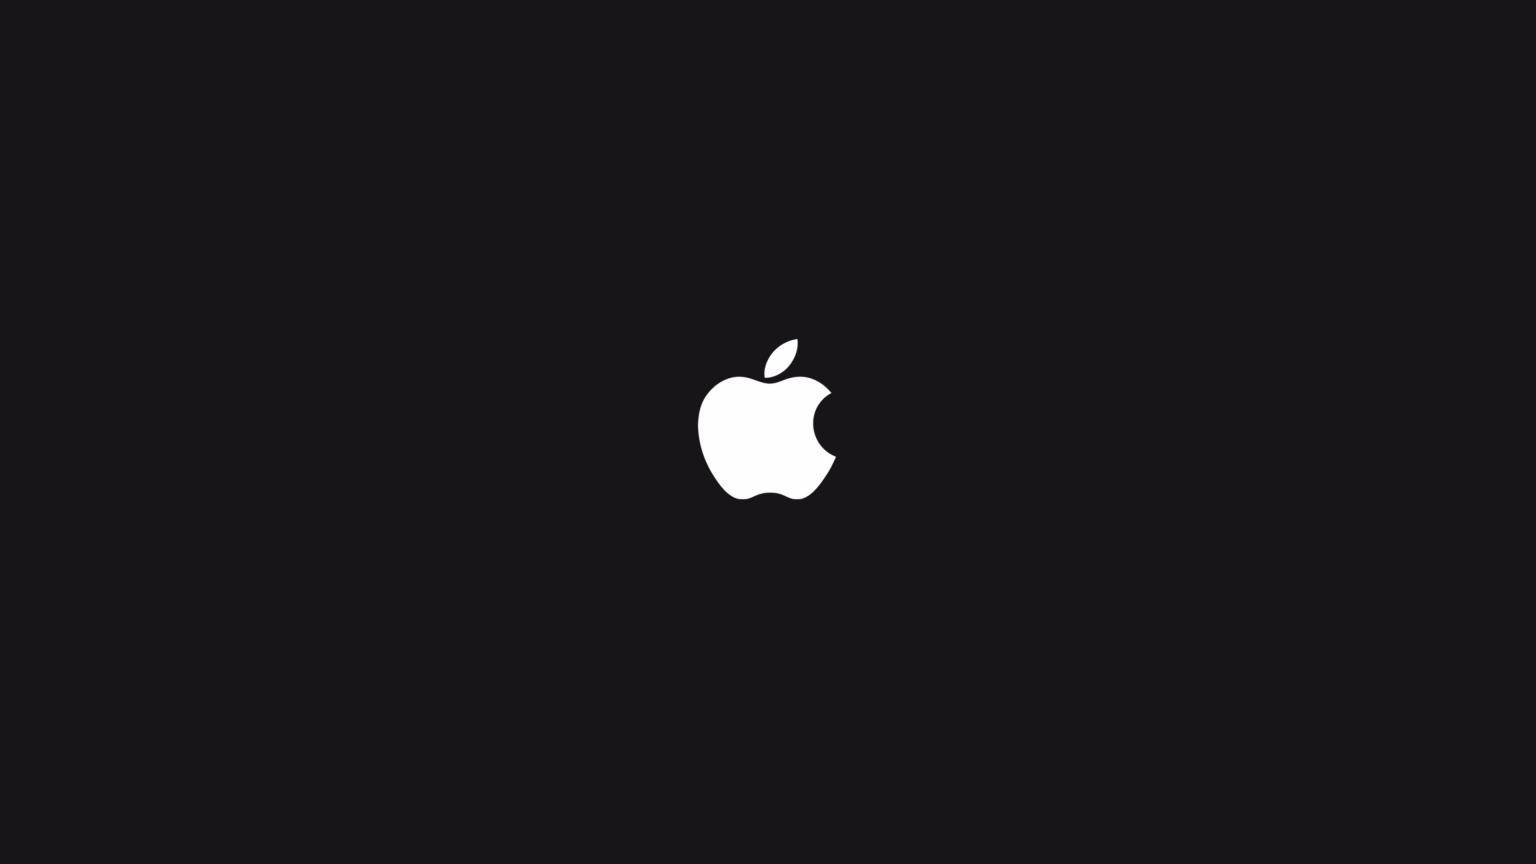 Apple Logo 4k On Dark Bagground Background